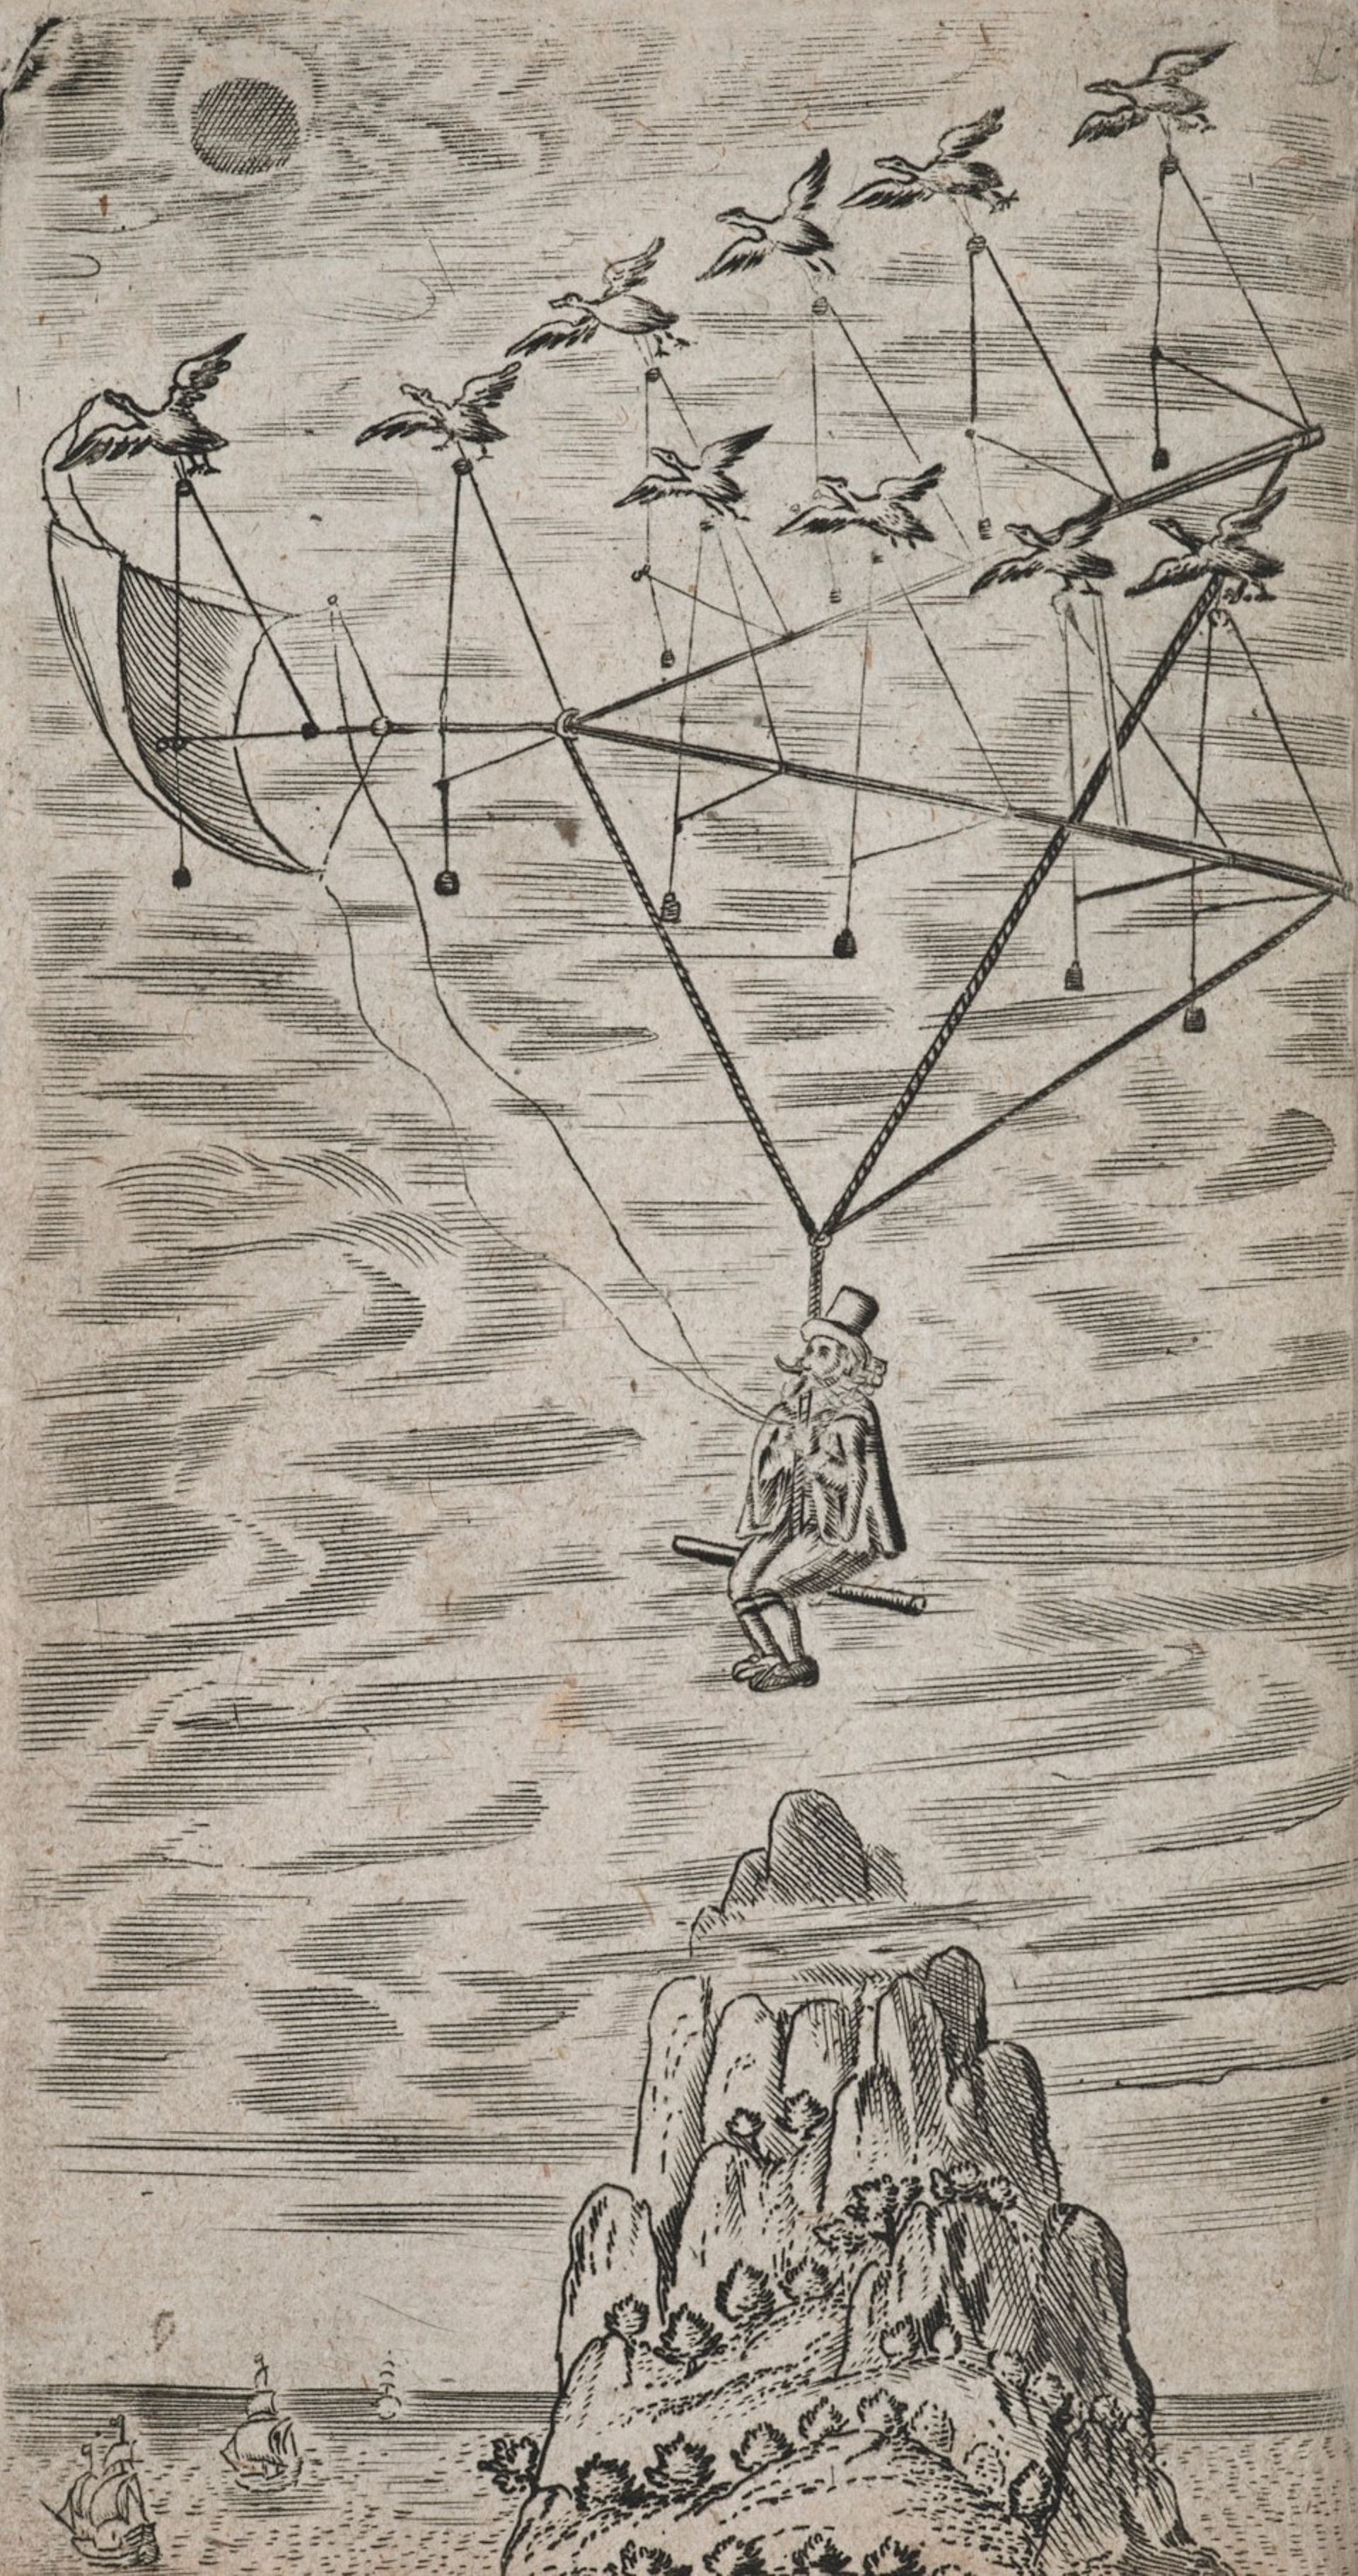 Extrait de « L’Homme dans la lune », de Francis Godwin, édition de 1657 : l’engin tiré par des oies, permettant à Domingo Gonsales de se rendre sur la Lune.